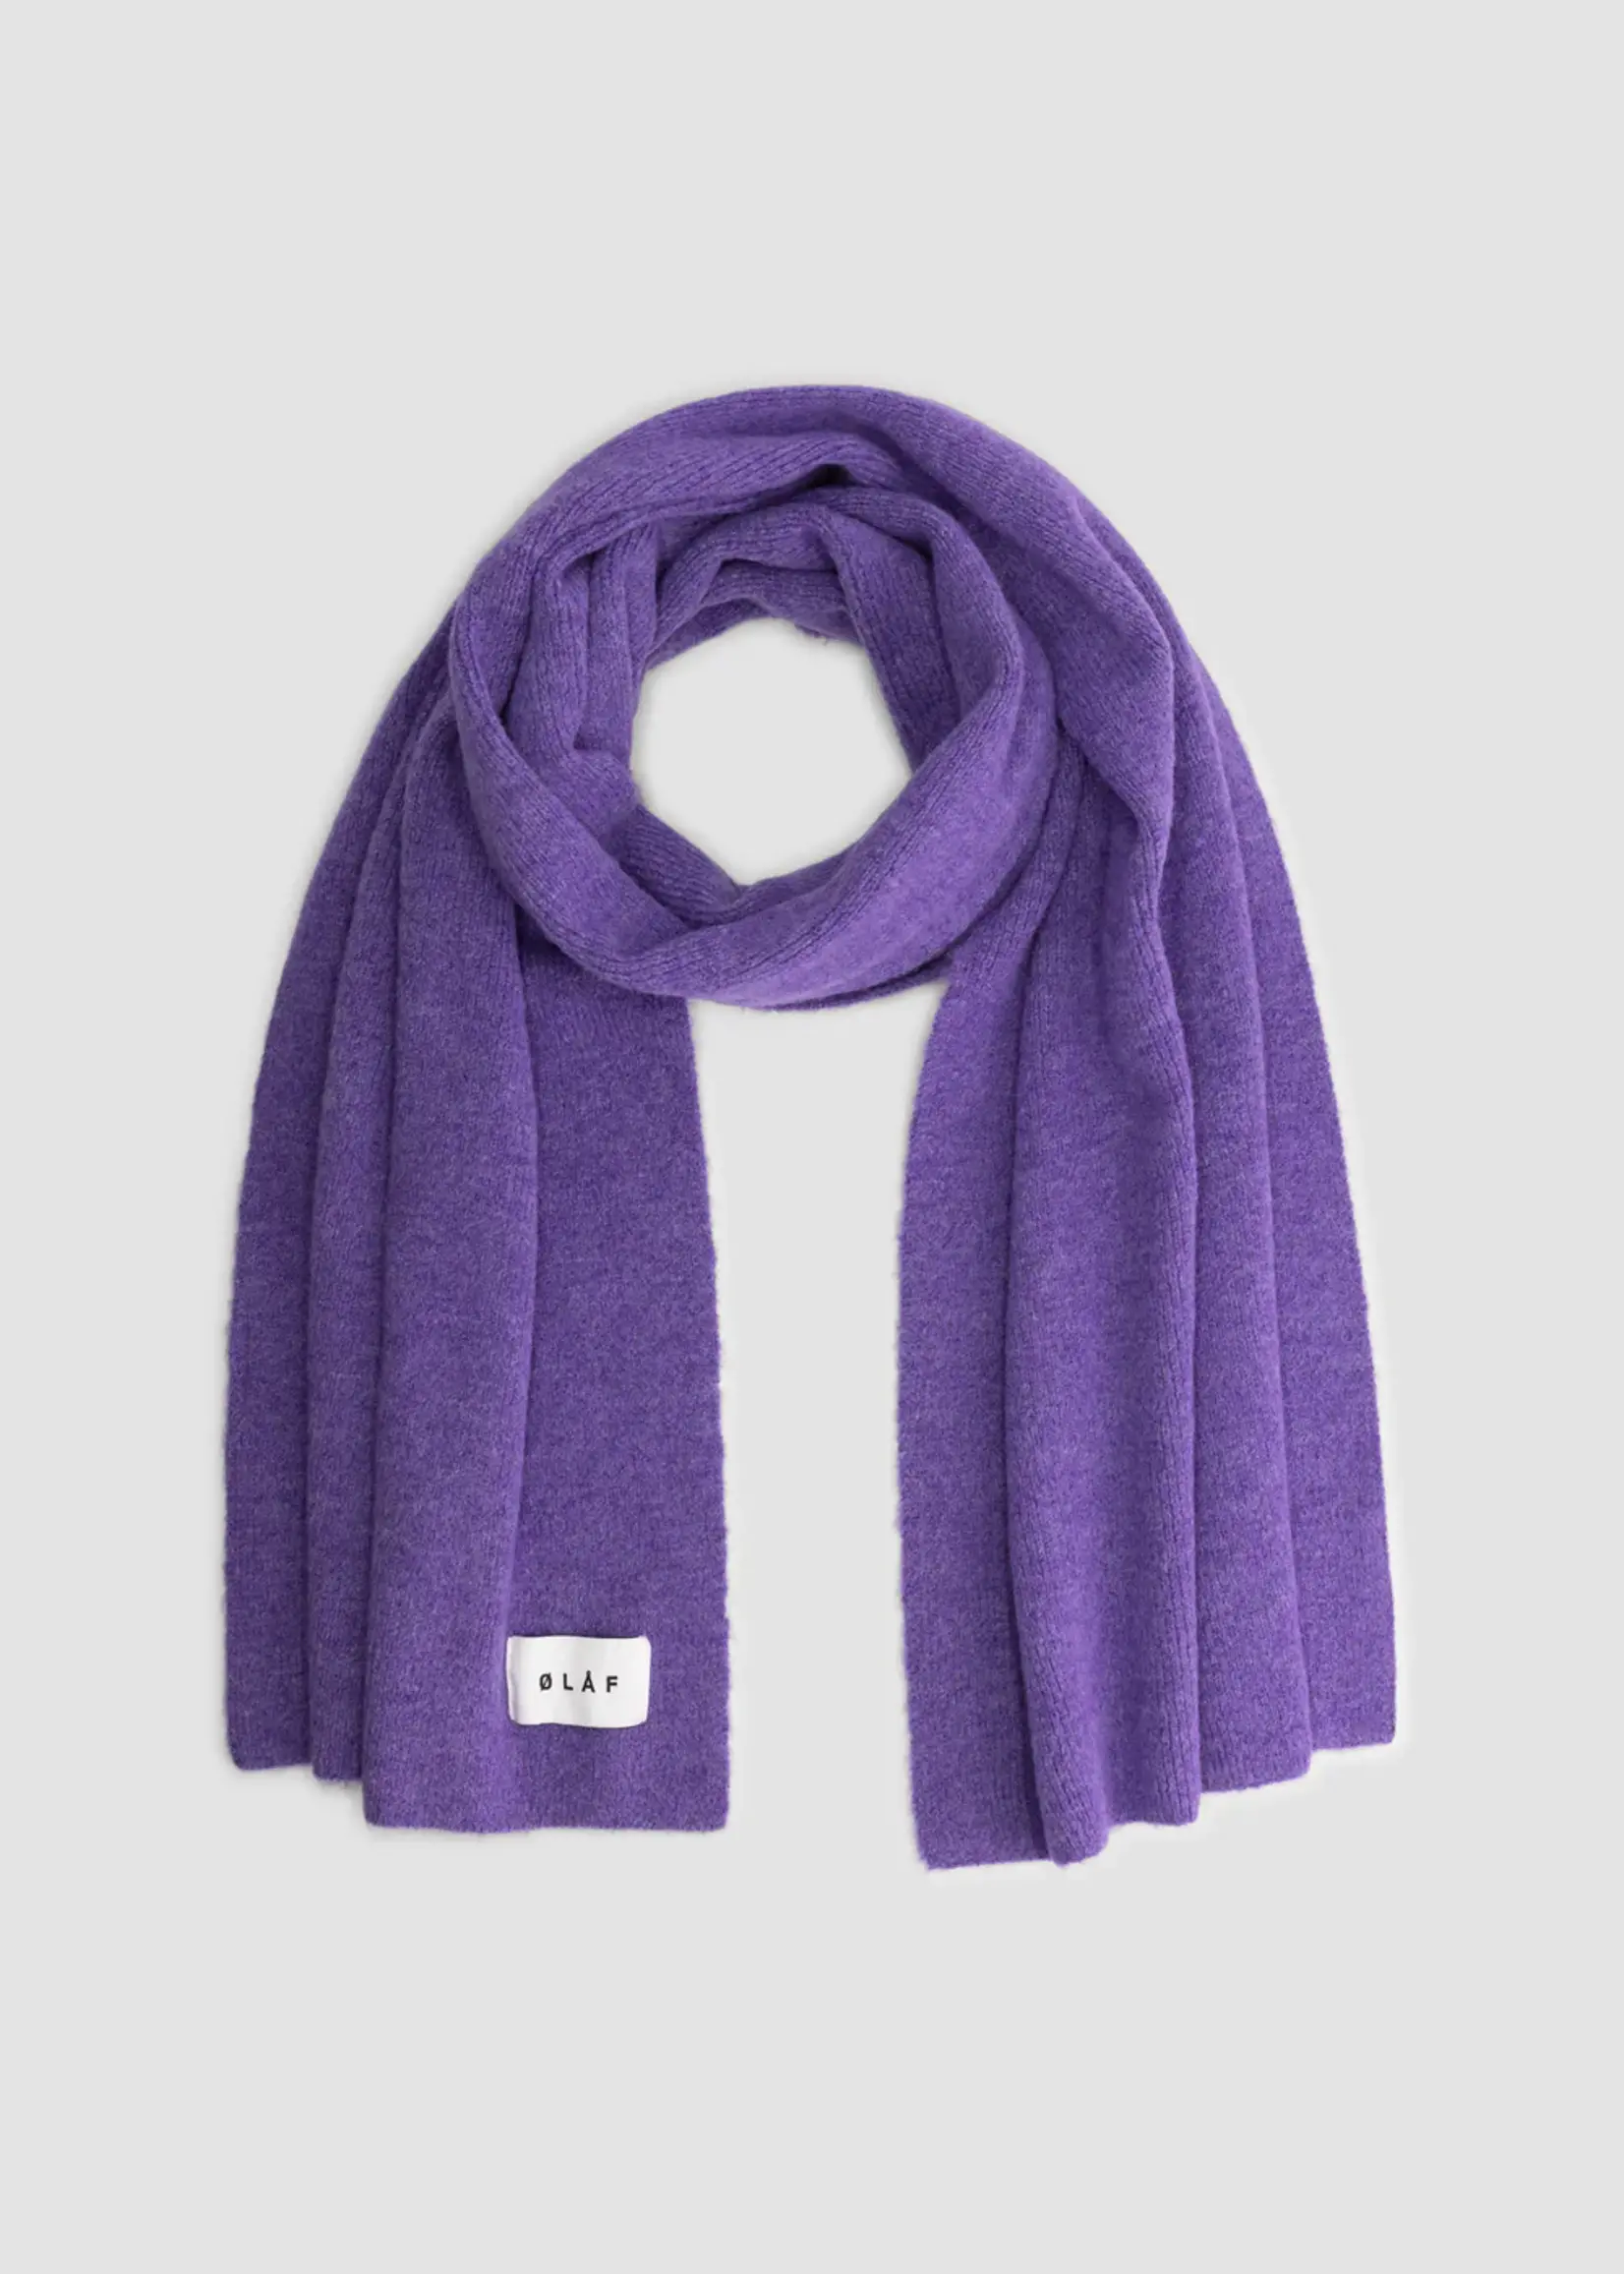 Olaf Hussein Olaf Rib scarf purple